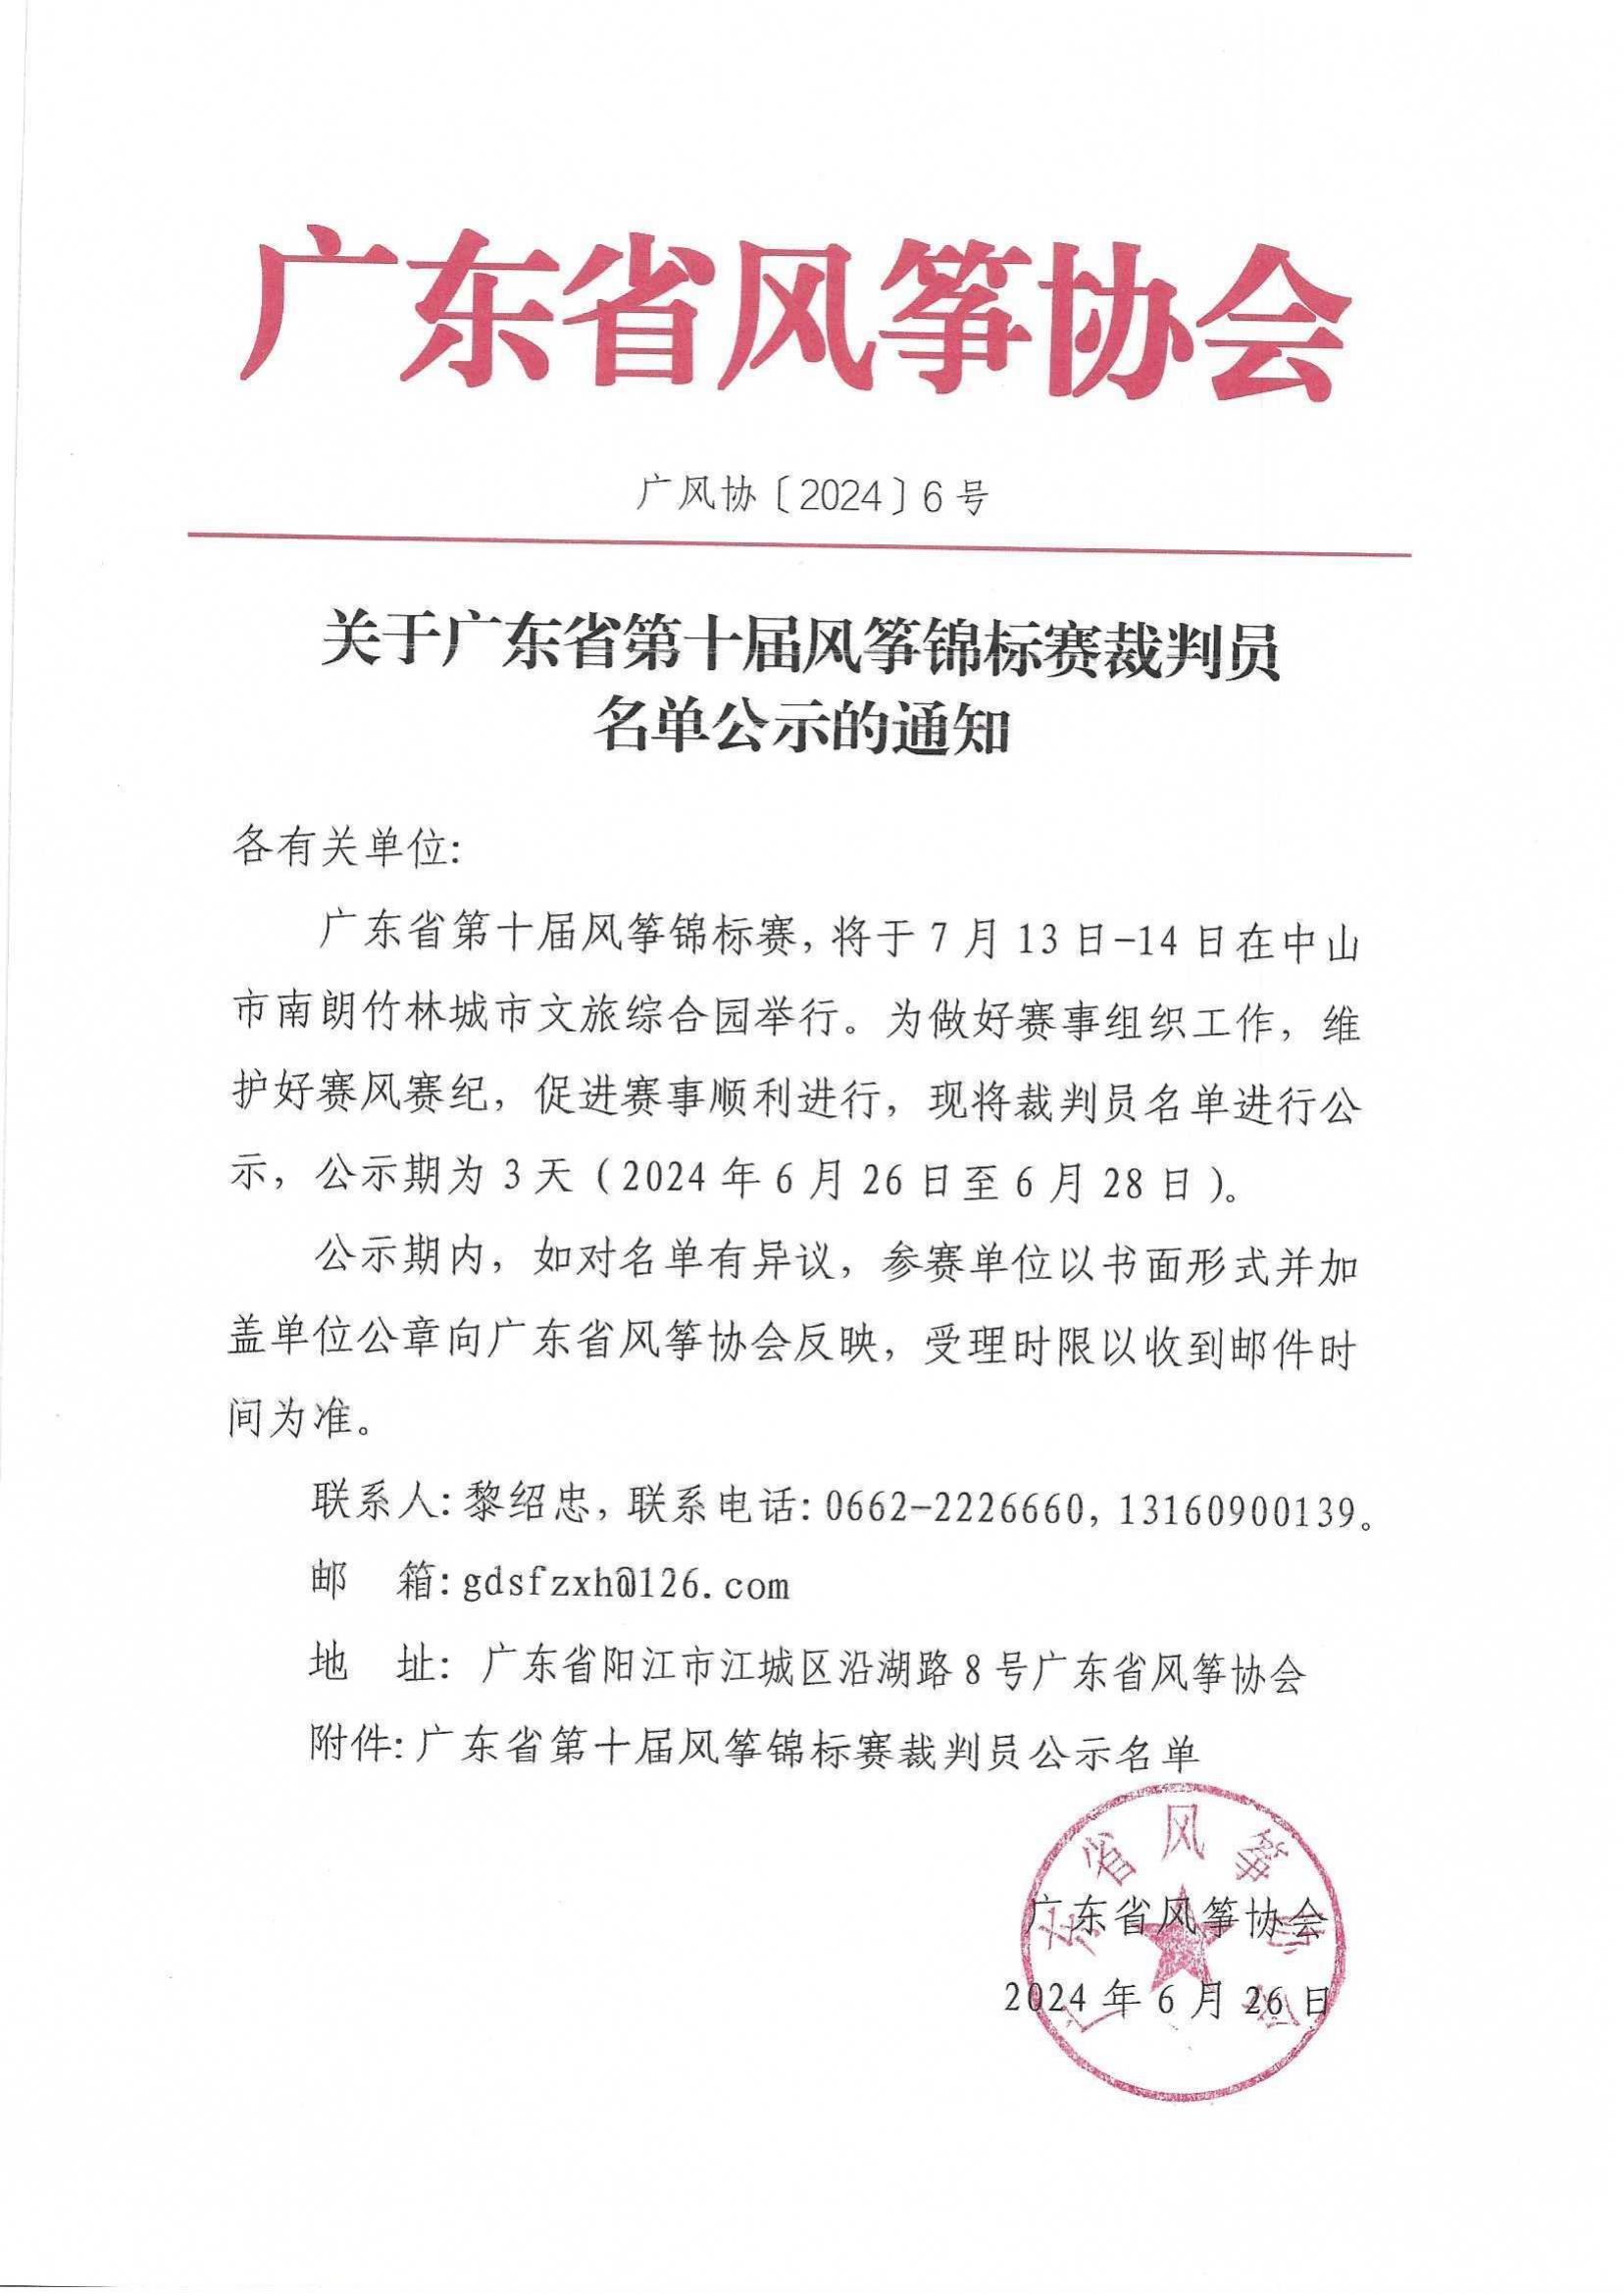 关于广东省第十届风筝锦标赛裁判员名单公示的通知